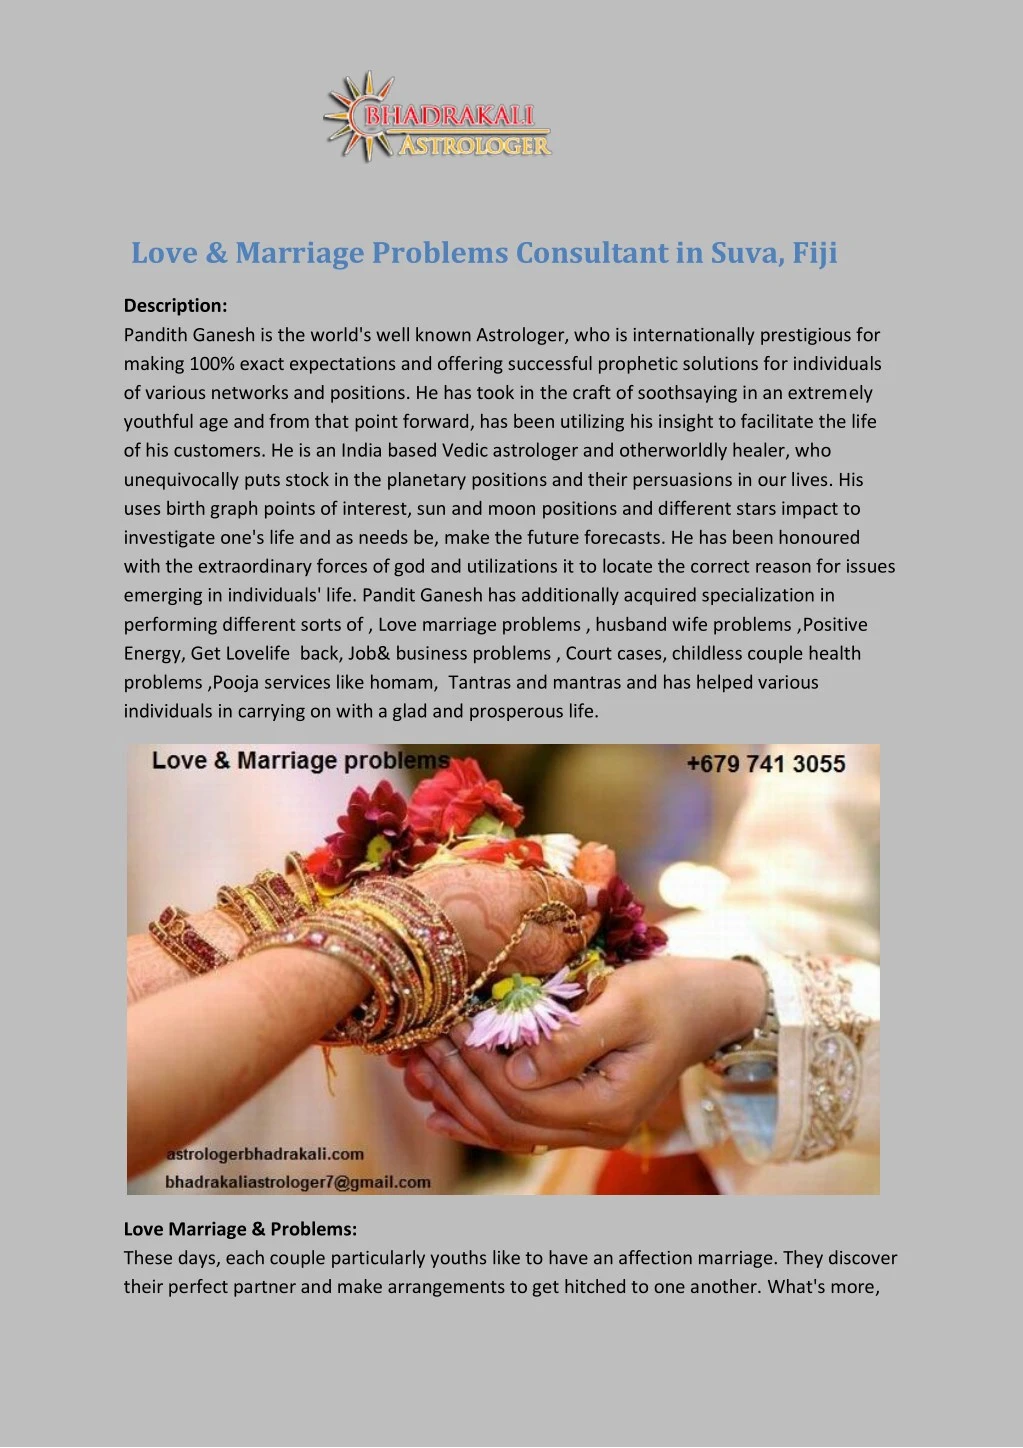 love marriage problems consultant in suva fiji